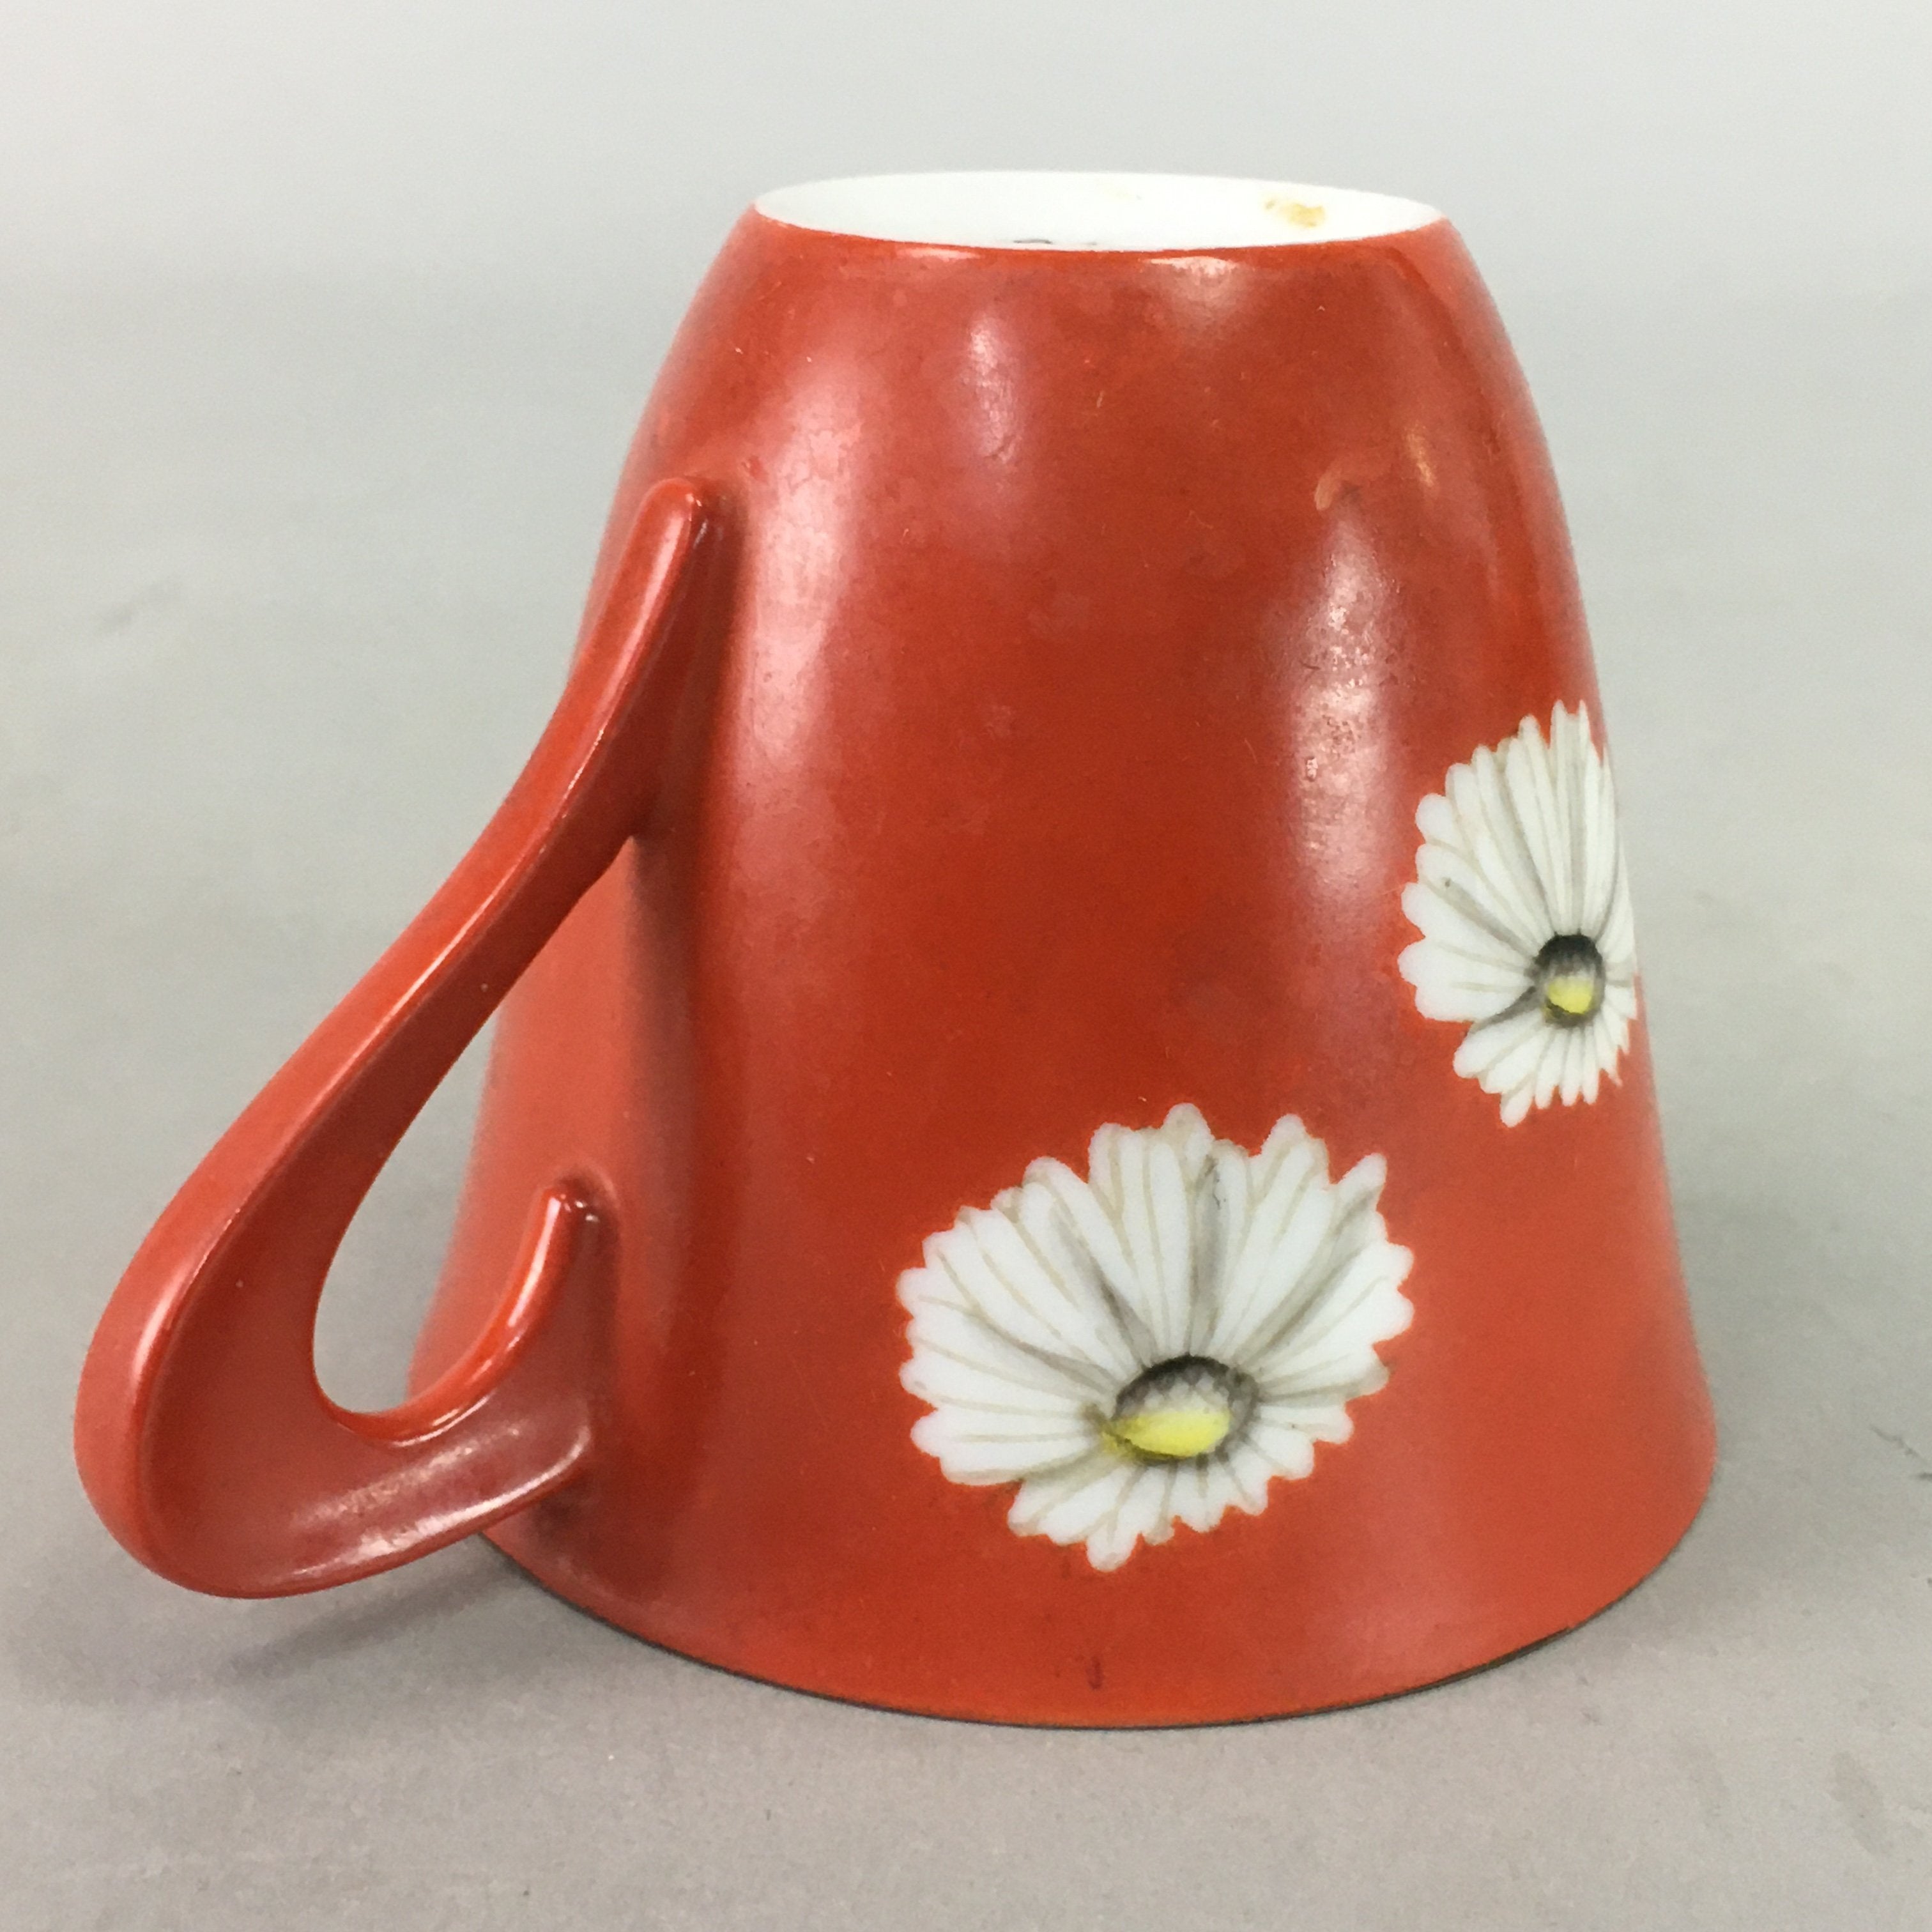 Japanese Porcelain Teacup Mug Vtg Yunomi Floral Red White PT968